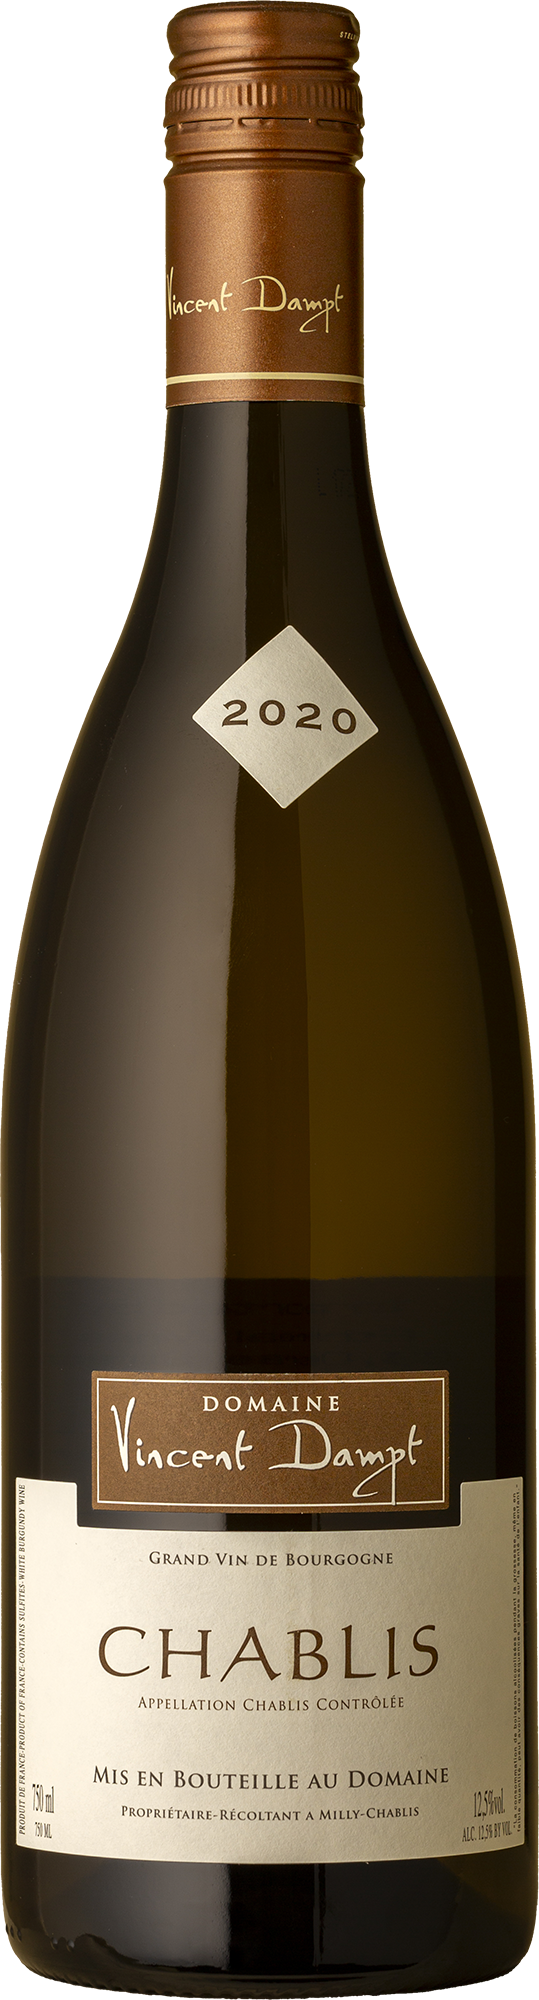 Vincent Dampt - Chablis Chardonnay 2020 White Wine